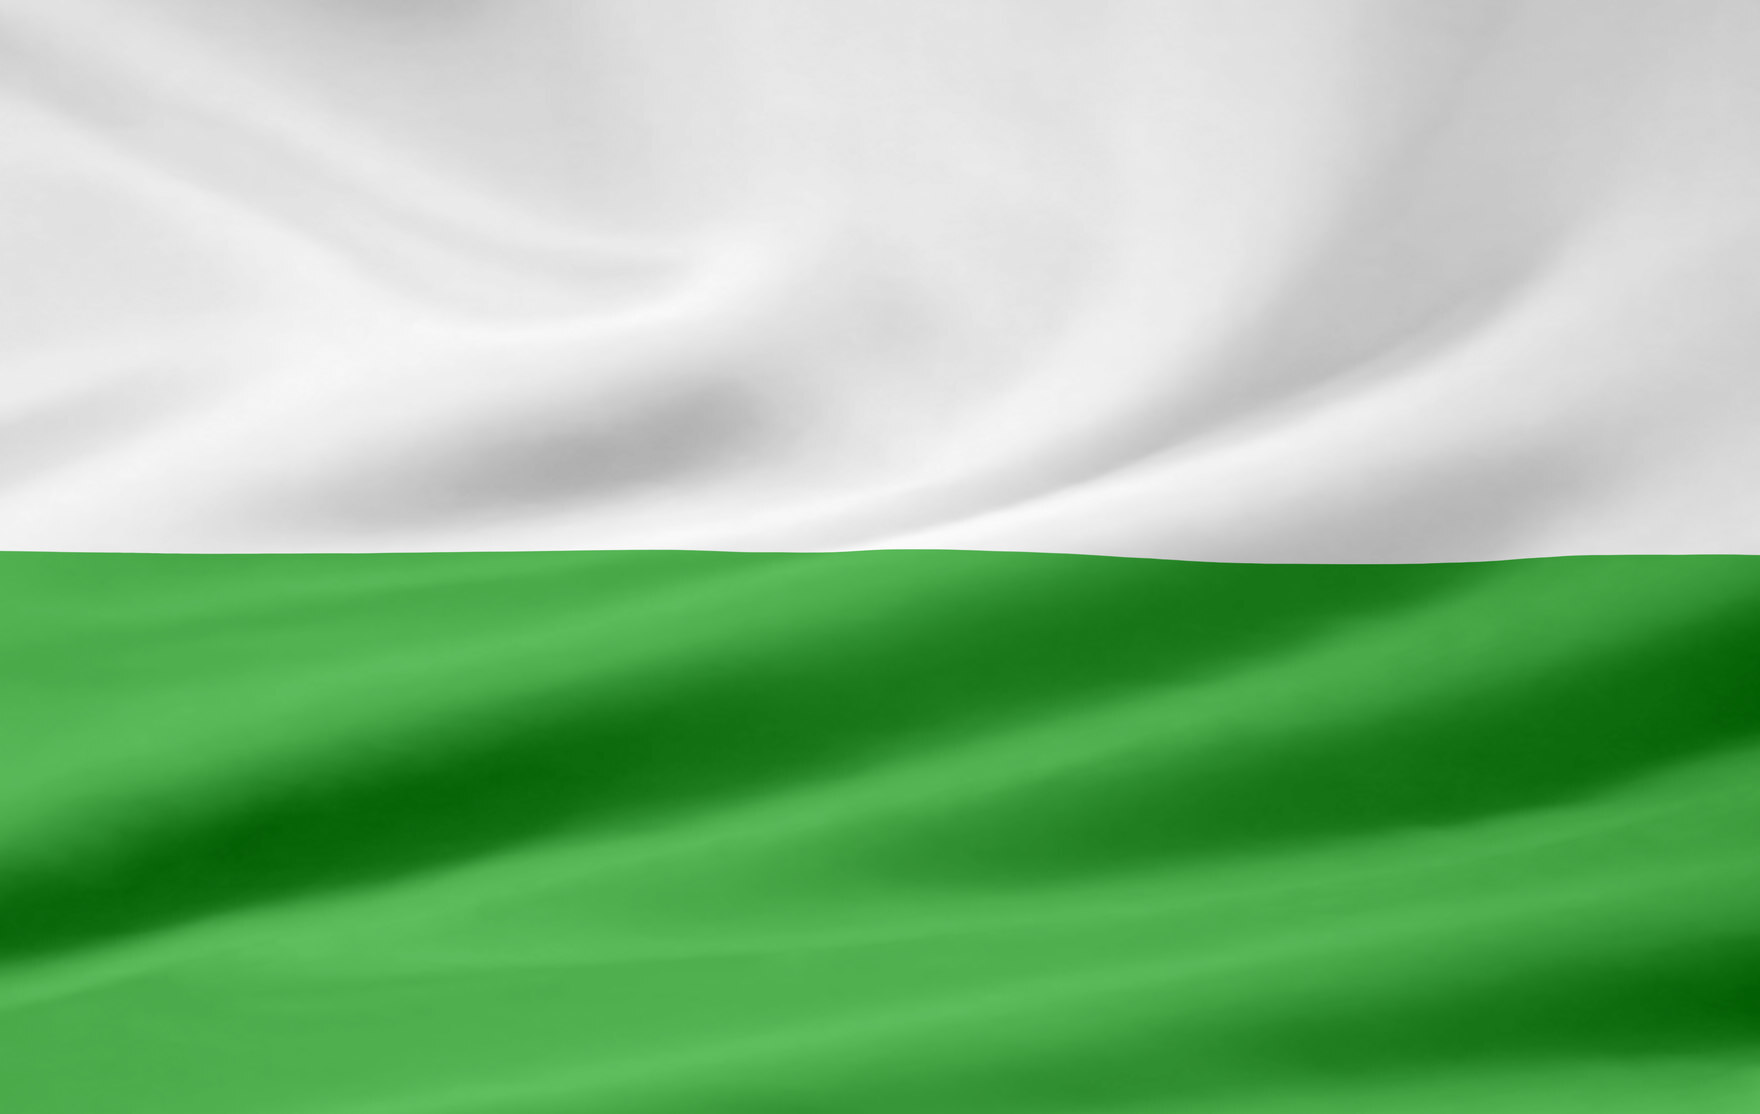 Eine Flagge in den Farben grün und weiß.